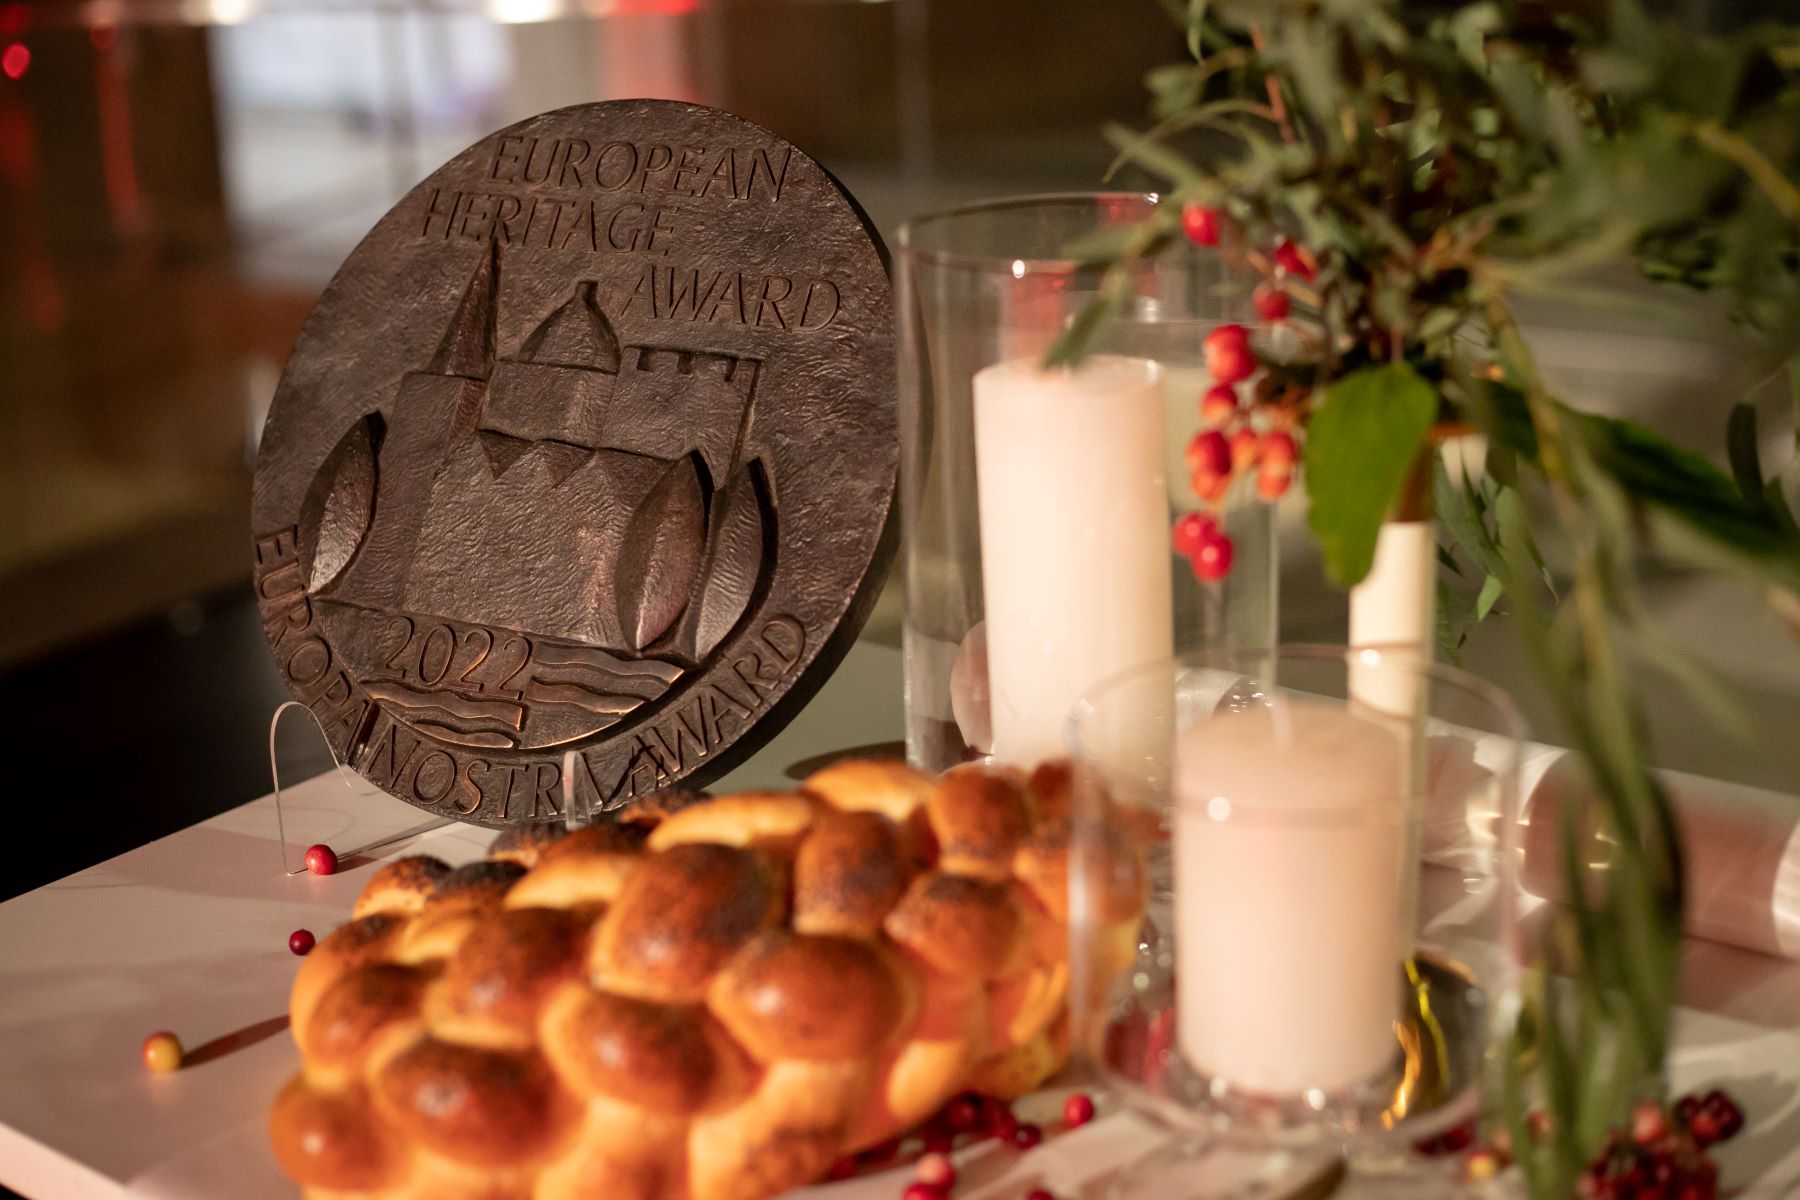 Na stole przy chałce, roślinnej dekoracji i świeczkach stoi medal Nagrody Europa Nostra 2022.